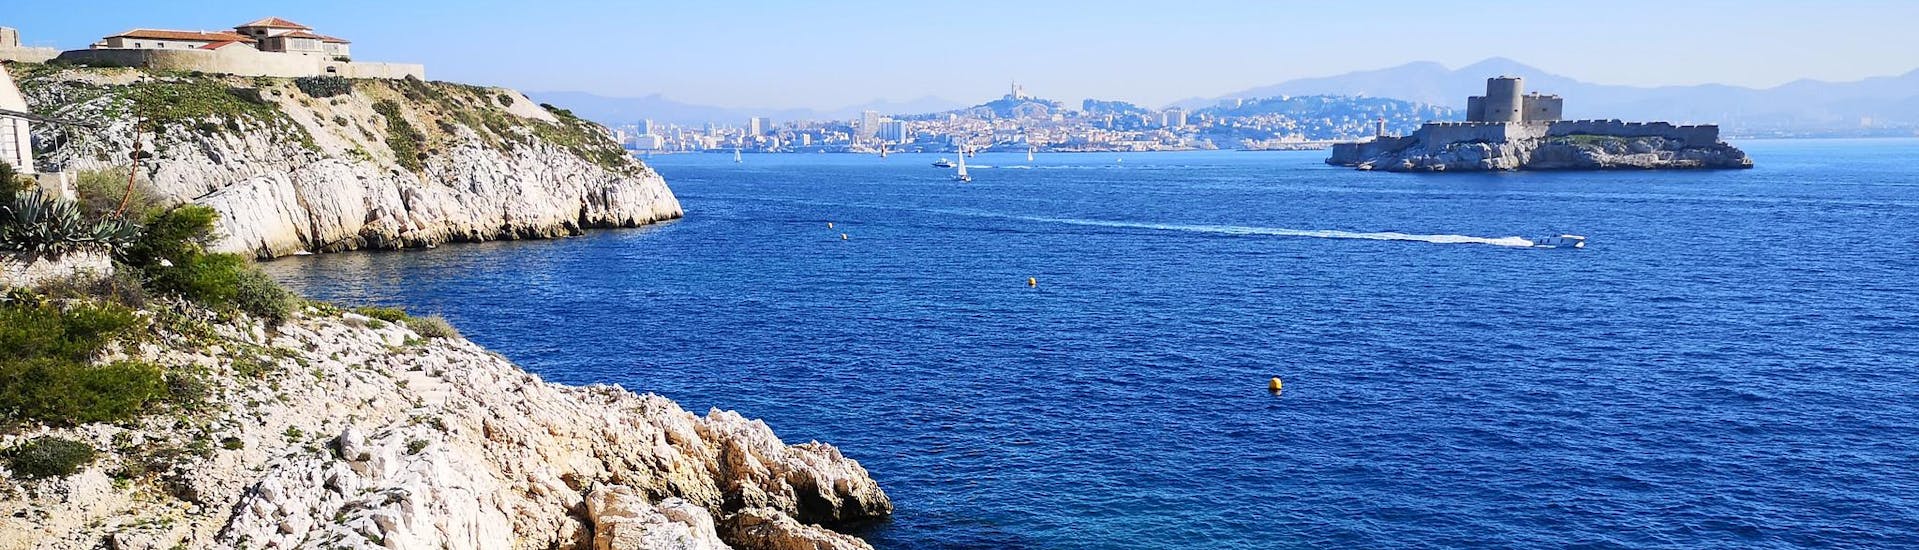 Vue sur Marseille et le château d'If, depuis l'archipel du Frioul, qui est une destination populaire pour les balades en bateau.